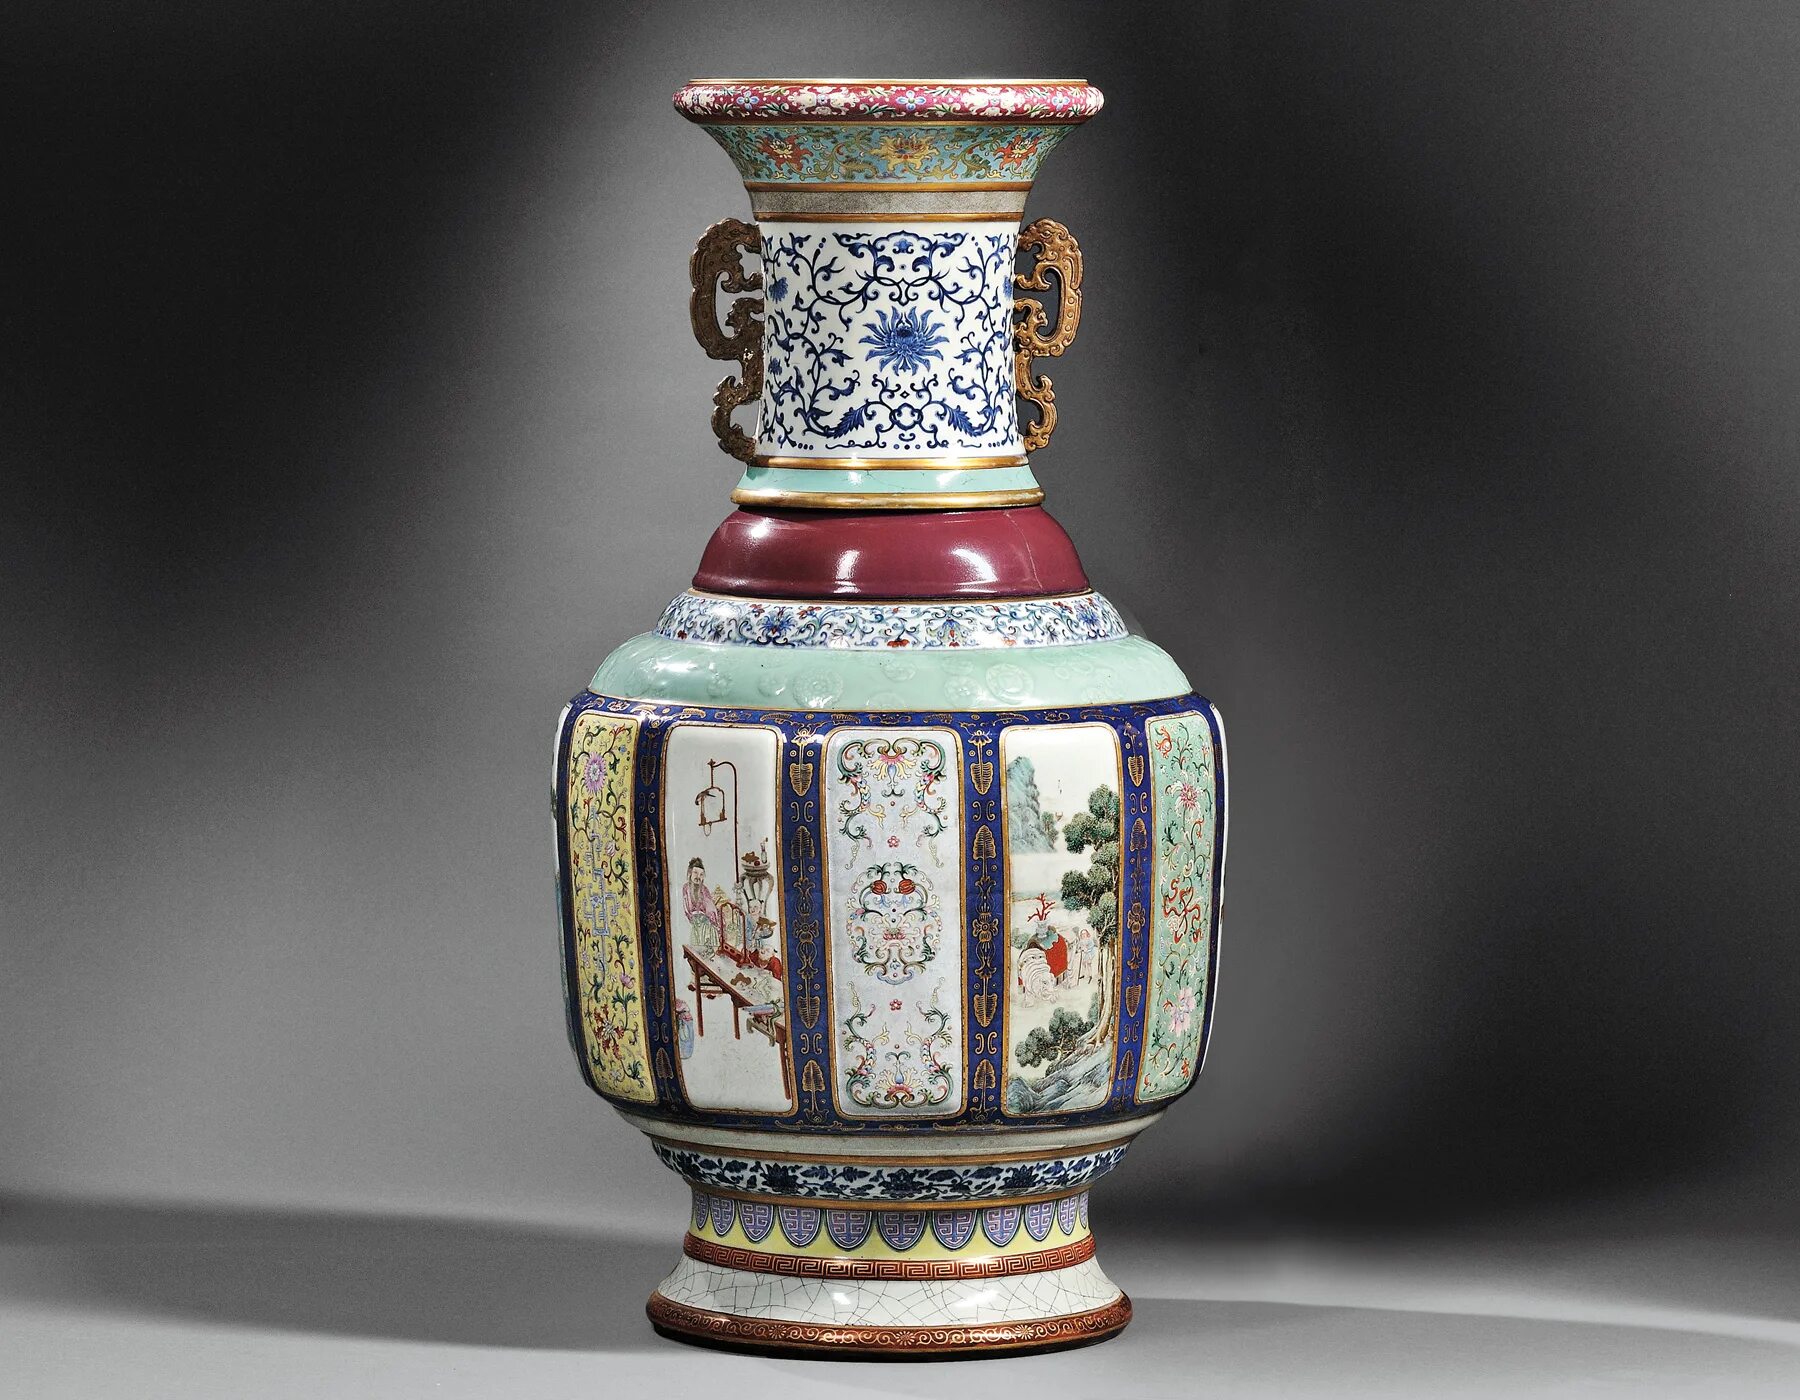 Стоит ваза в ваз 20. Керамика династии Цинь. Китайский фарфор Династия Qing. Китайские вазы династии Цинь. Китайская ваза династии Цин.